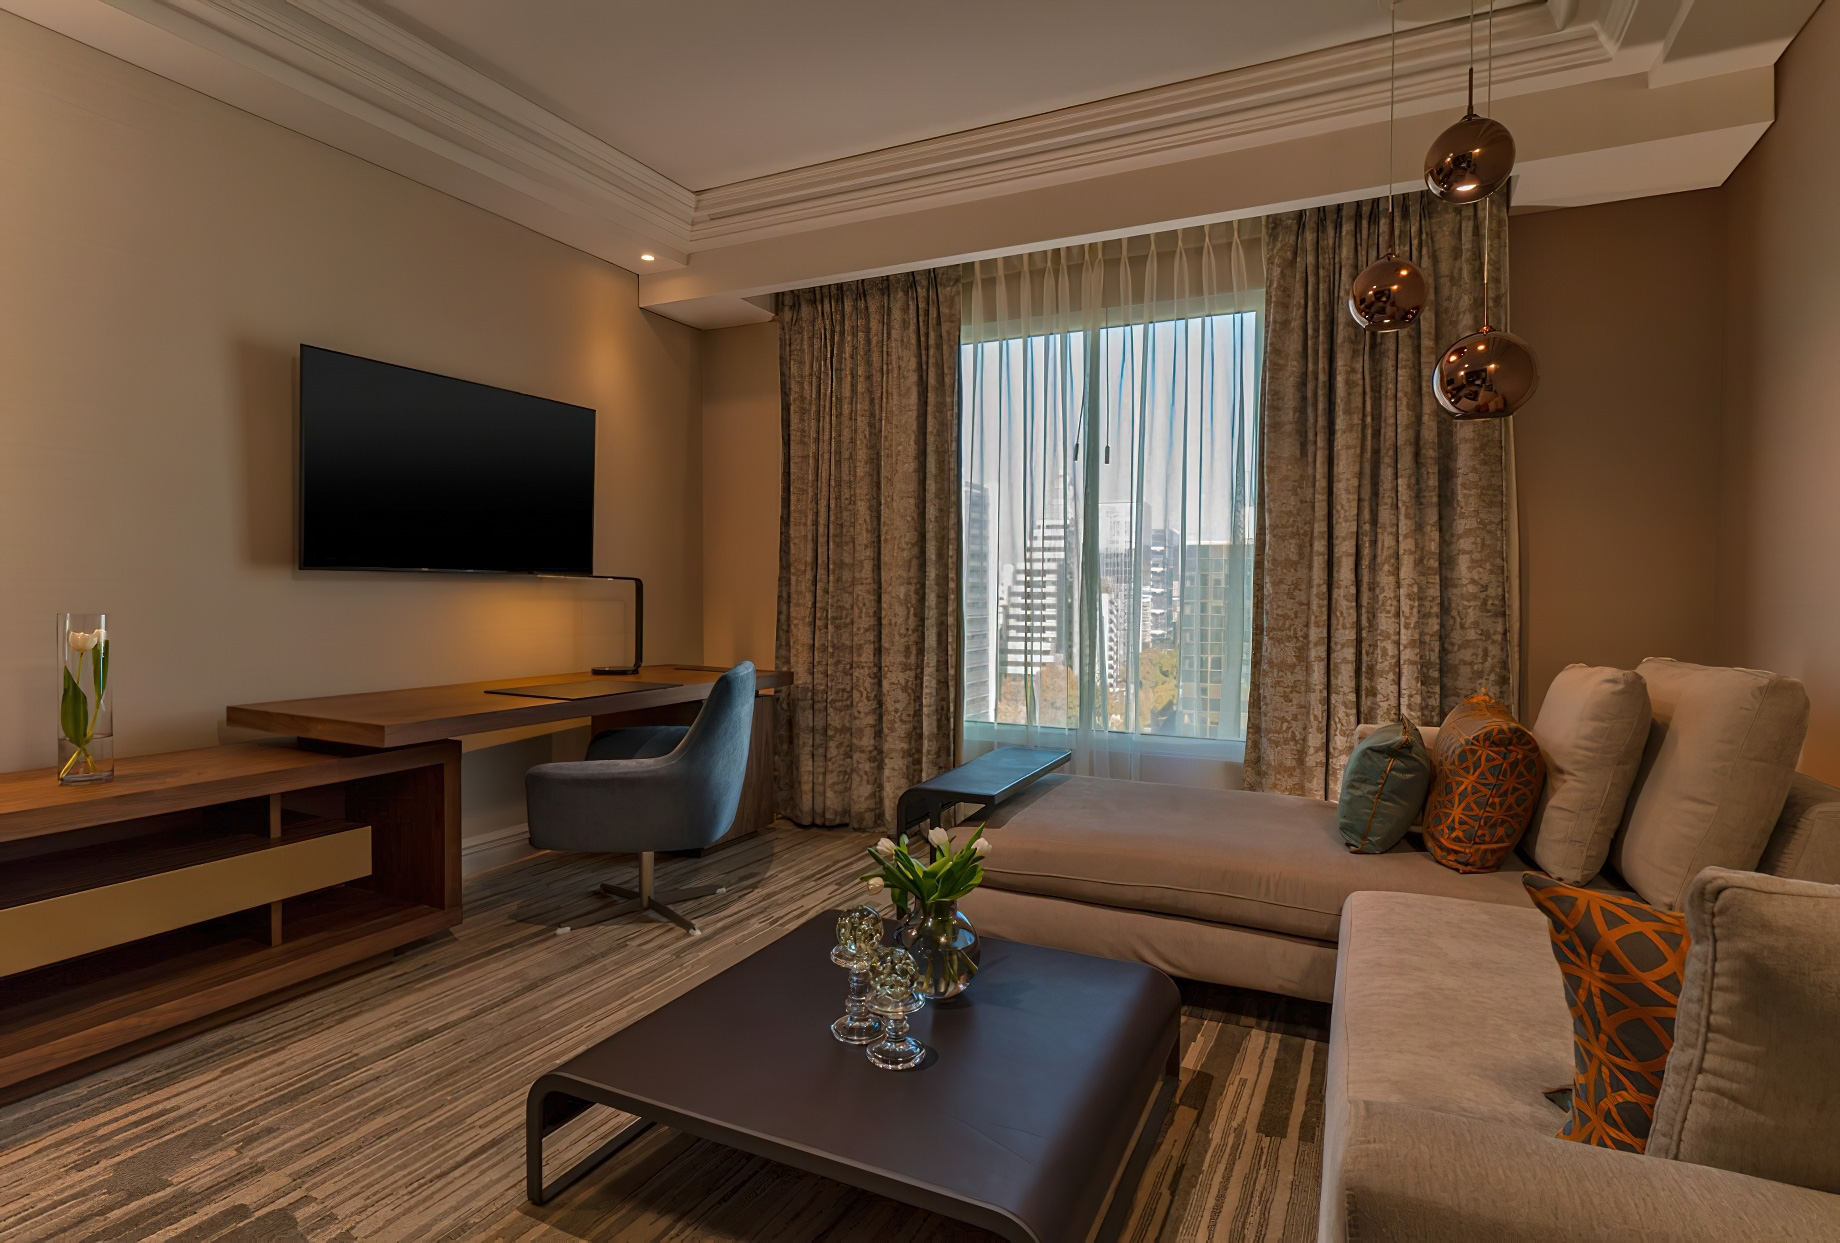 The Ritz-Carlton, Santiago Hotel - Santiago, Chile - Junior Suite Interior